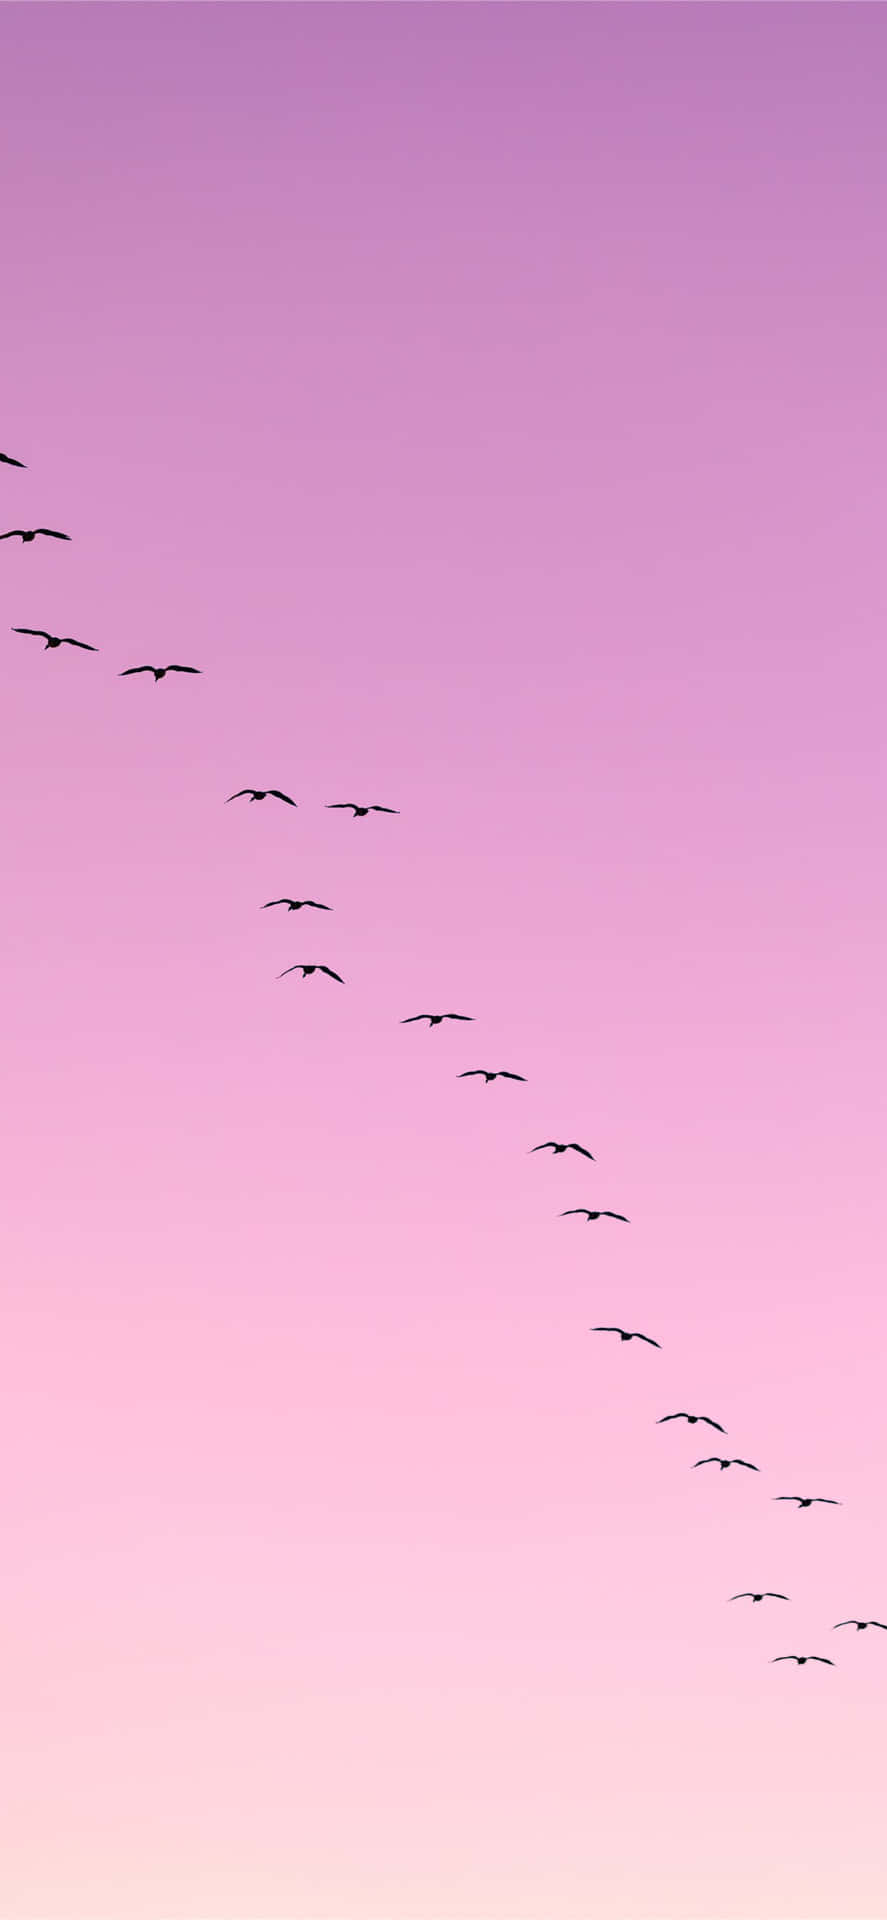 Pájarovolando Dejando Una Estela En El Cielo Rosa. Fondo de pantalla